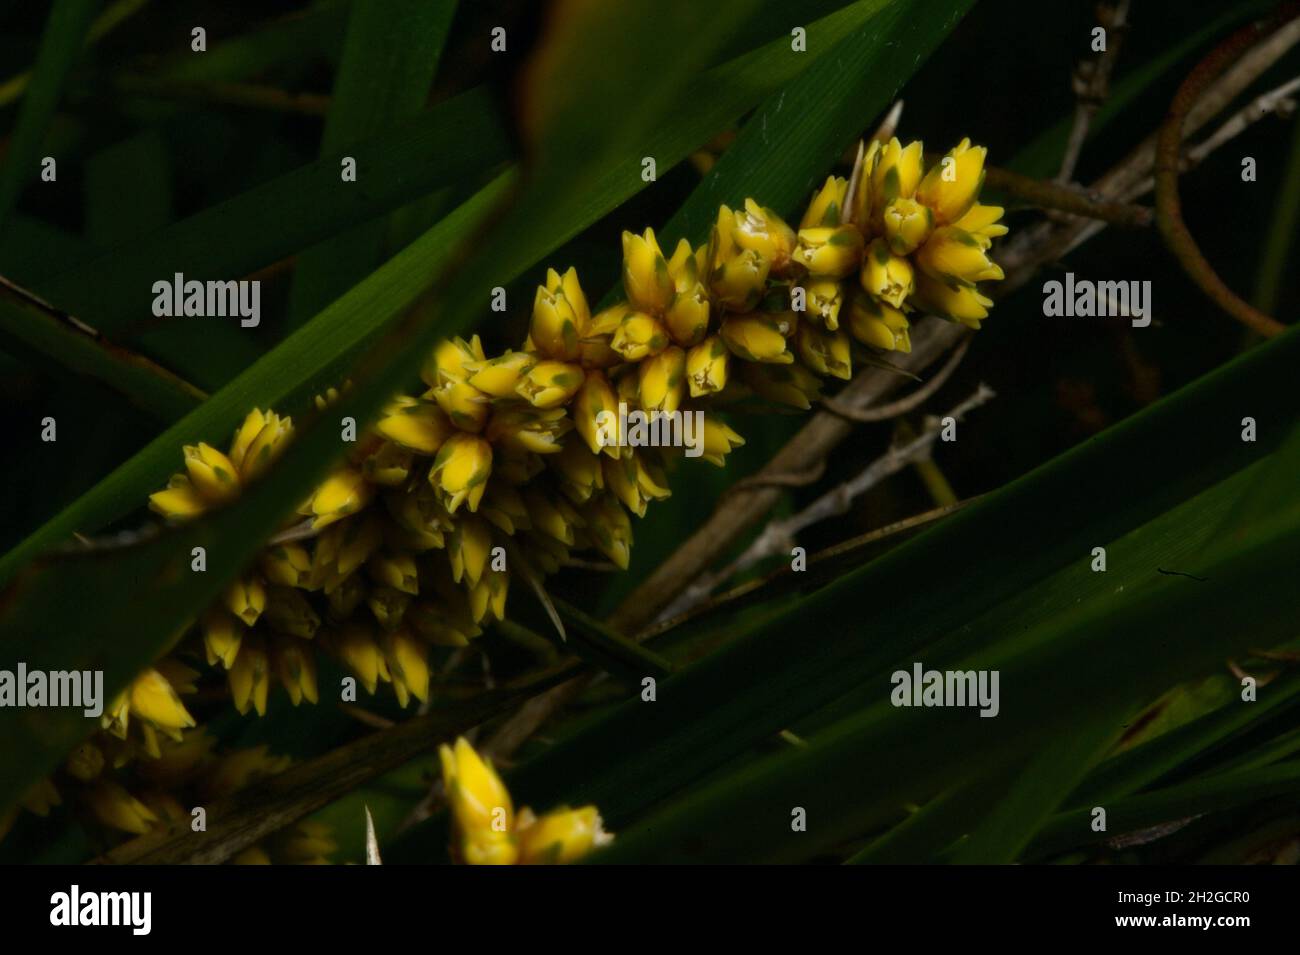 Wenn Sie Gräser zur Dekoration in einen Topf gepflanzt haben - so sehen ihre Blumen aus. Wattle Mat Rush (Lomandra filiformis) am Hochkins Ridge. Stockfoto